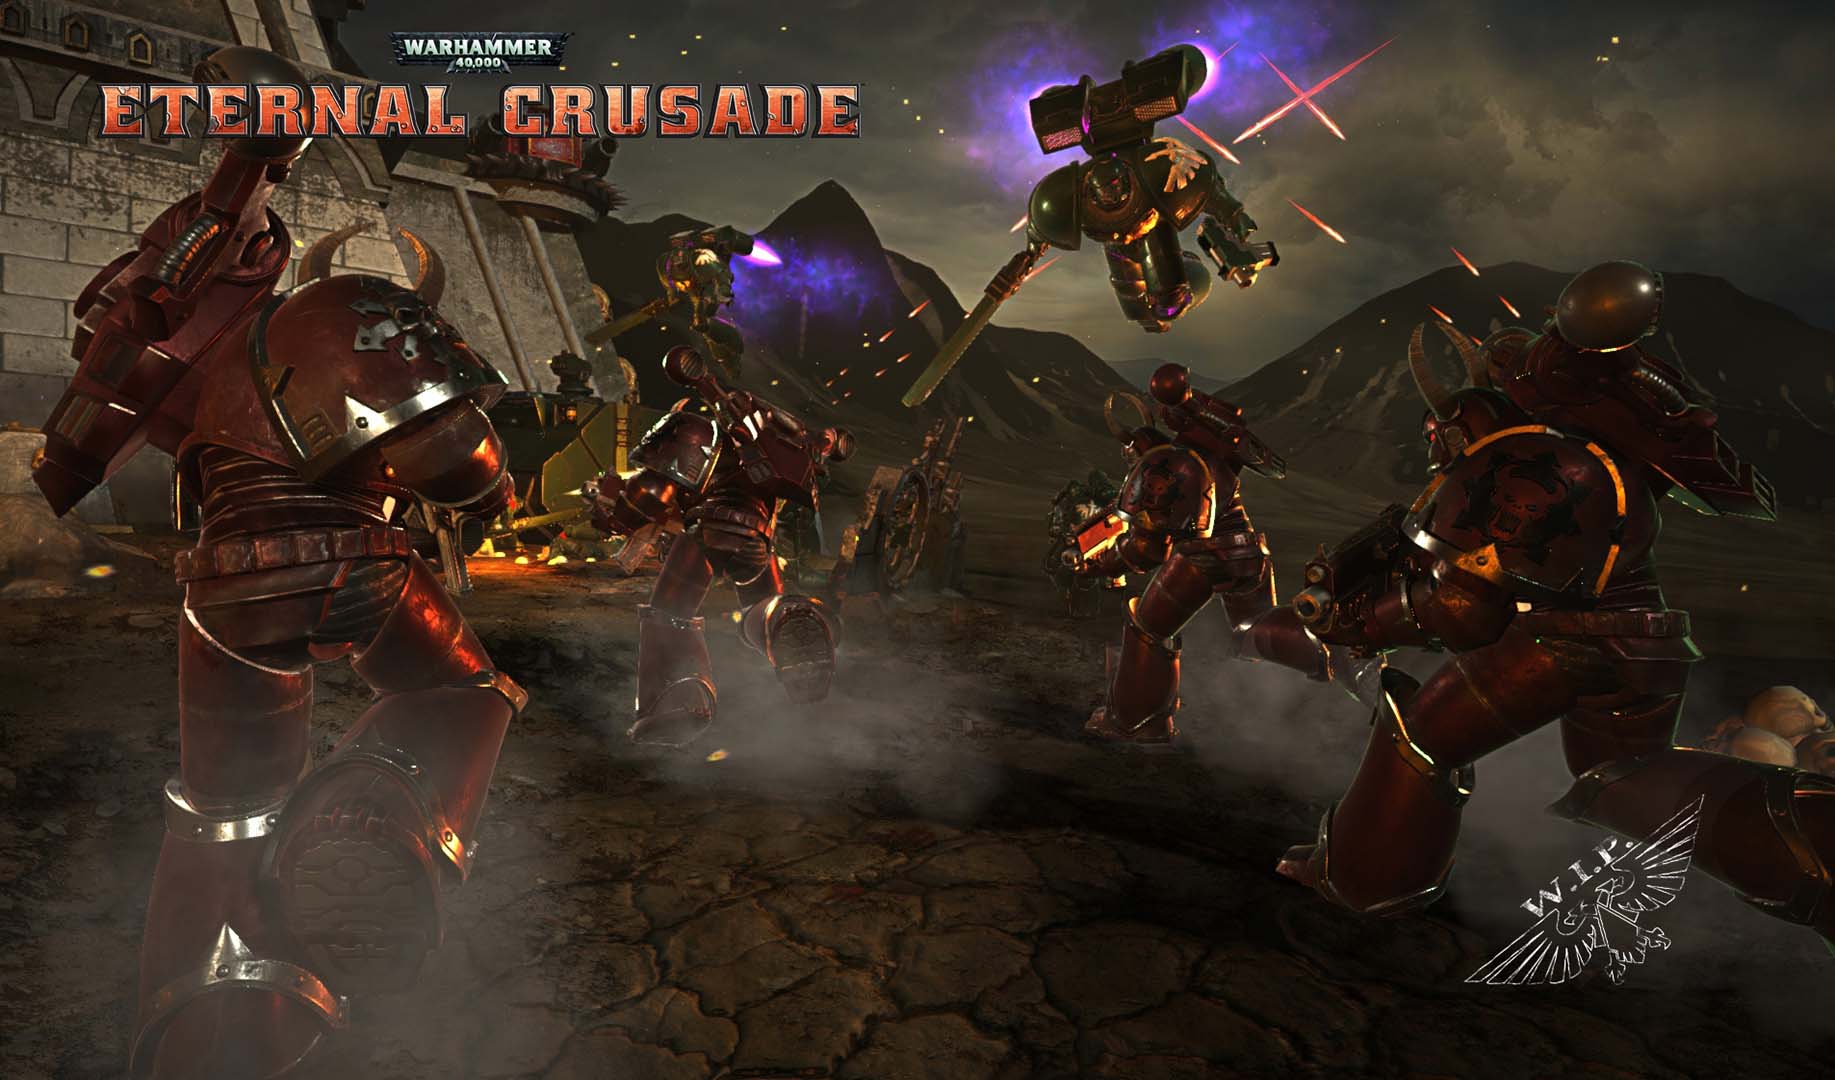 High Resolution Wallpaper | Warhammer 40,000: Eternal Crusade 1835x1080 px